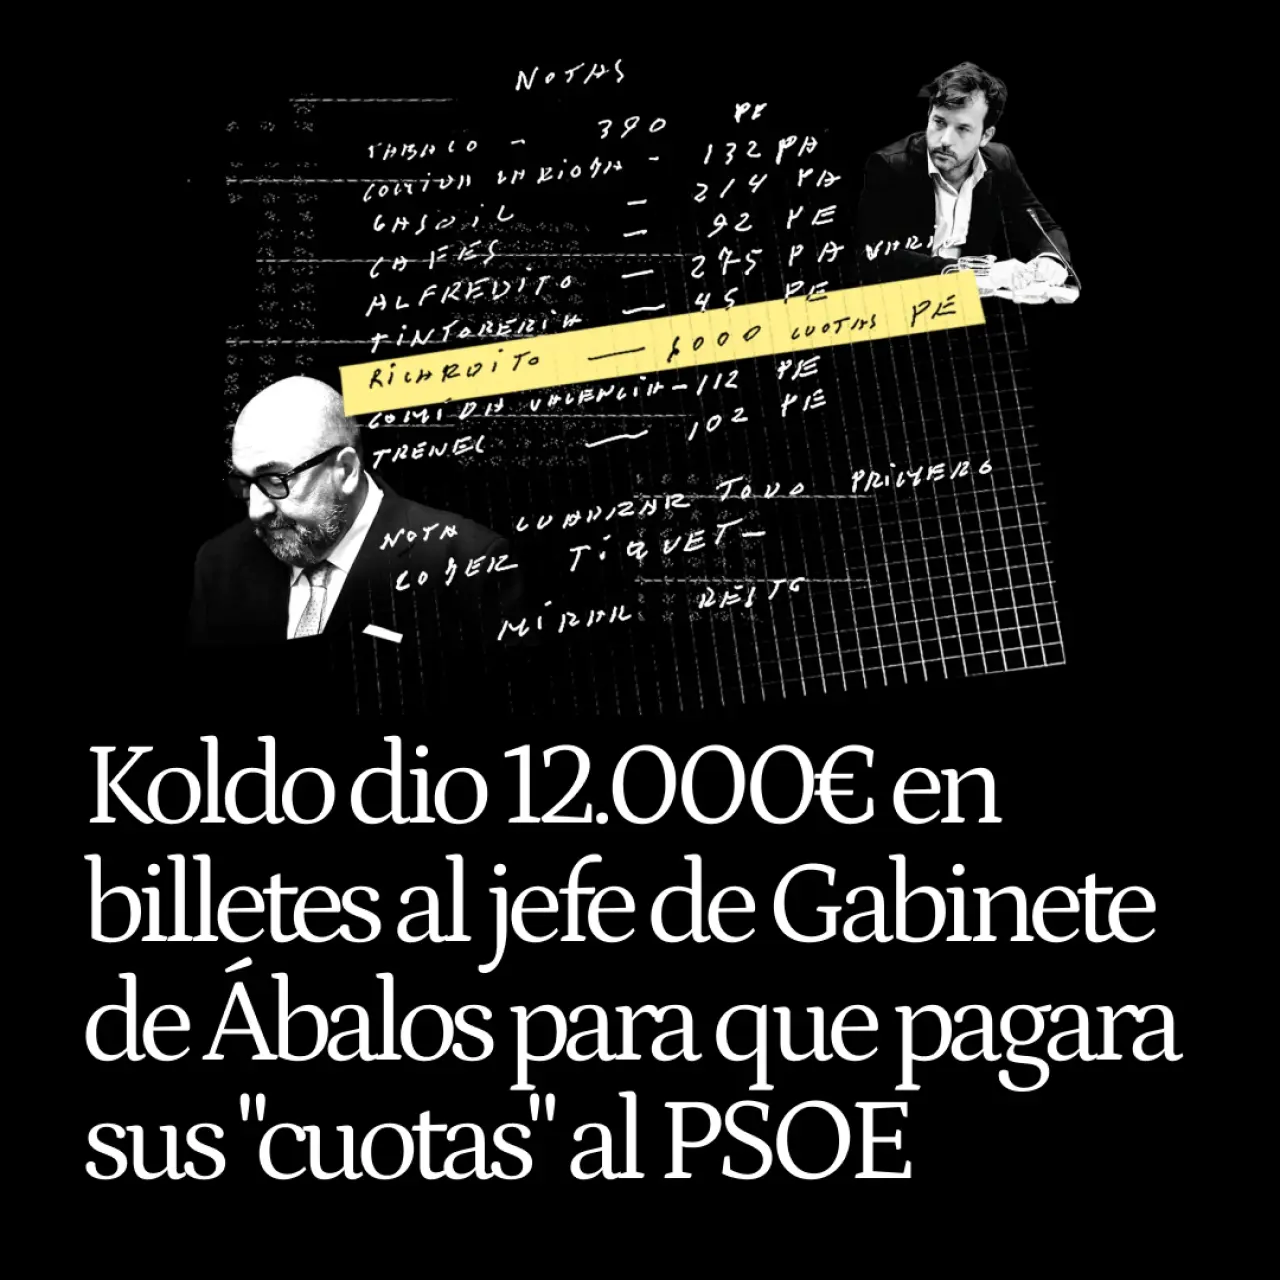 Koldo dio 12.000 euros en billetes al jefe de Gabinete de Ábalos para que pagara sus "cuotas" al PSOE